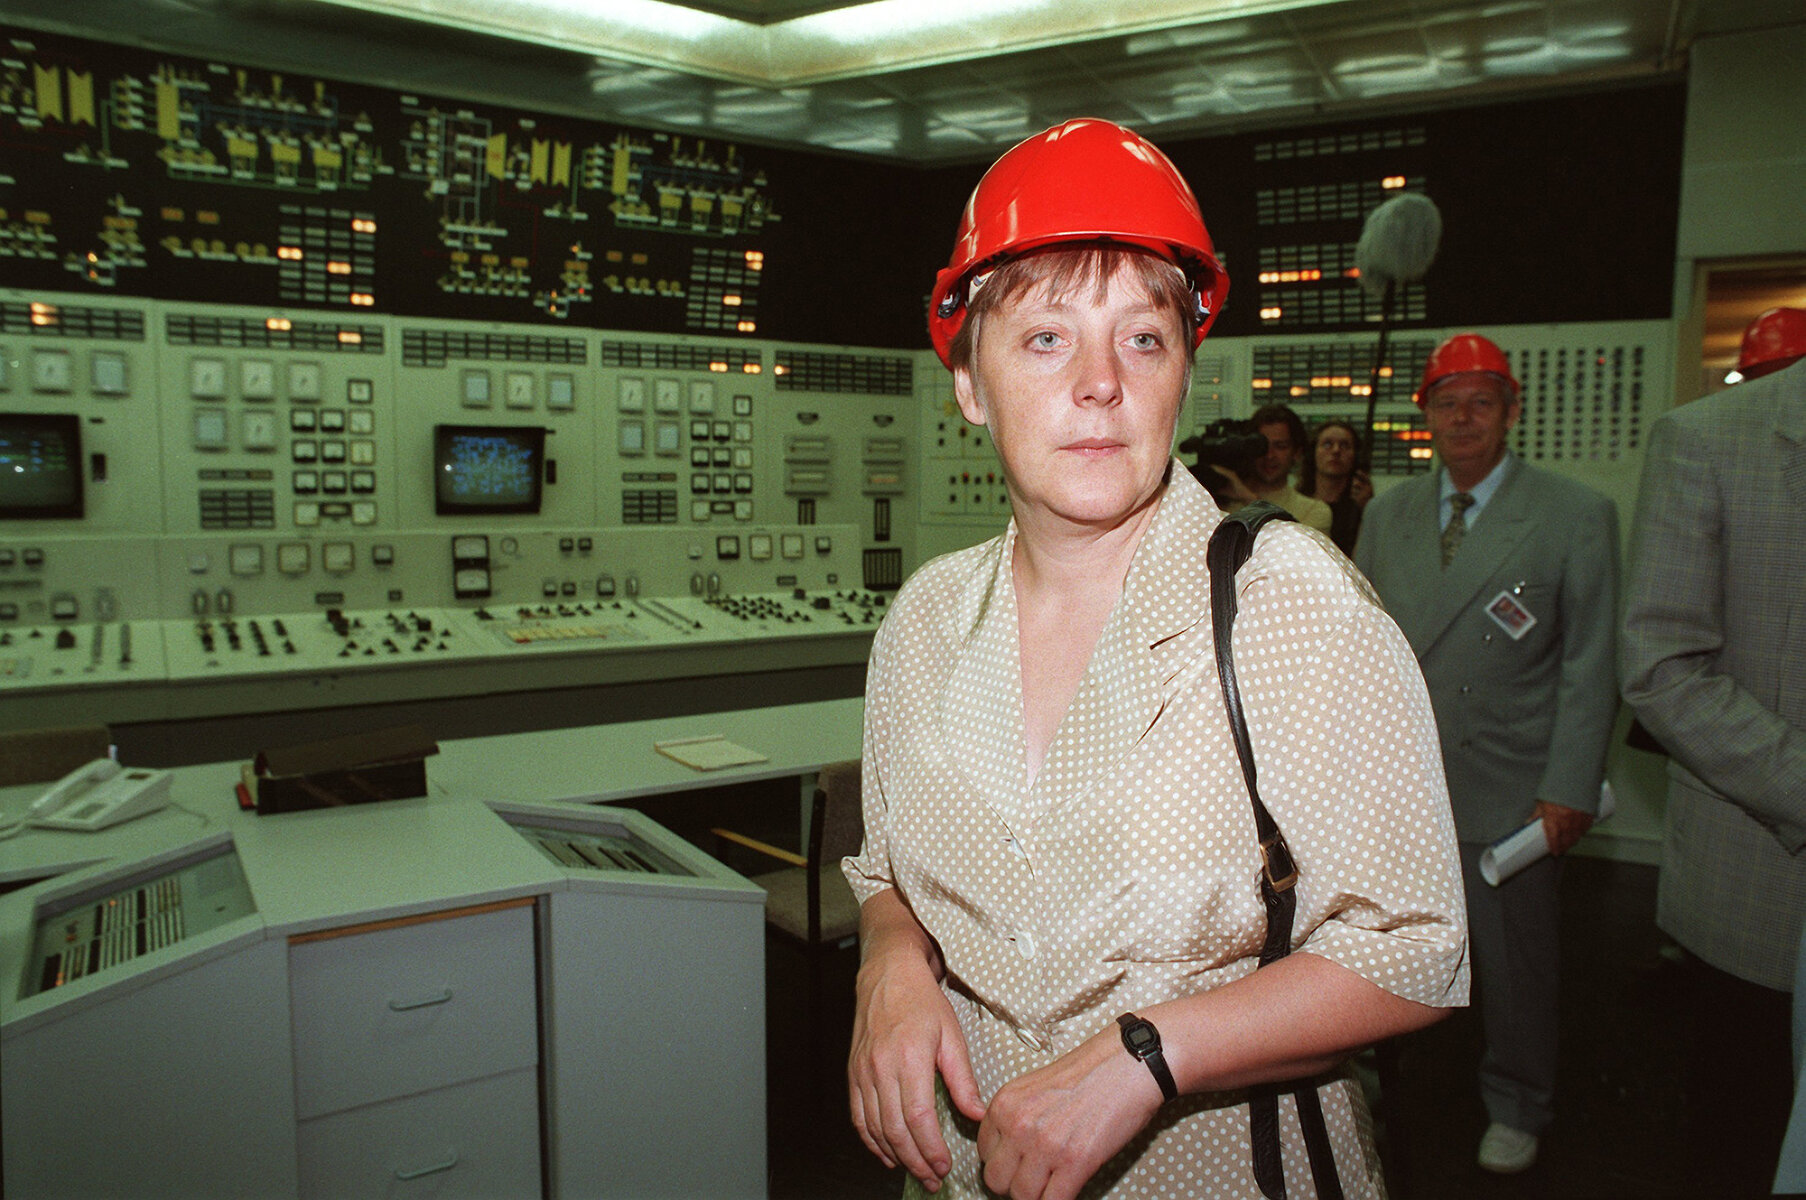 <p>Меркель в качестве министра по охране окружающей среды (получила портфель в 1994 году) во время посещения АЭС Грайфсвальд, Лубмин, 20 июля 1995 года&nbsp;</p>

<p>Эта атомная электростанция была крупнейшей в Восточной Германии, но прекратила работу после объединения страны в 1990 году. При Меркель были проведены работы по выведению АЭС из эксплуатации.</p>